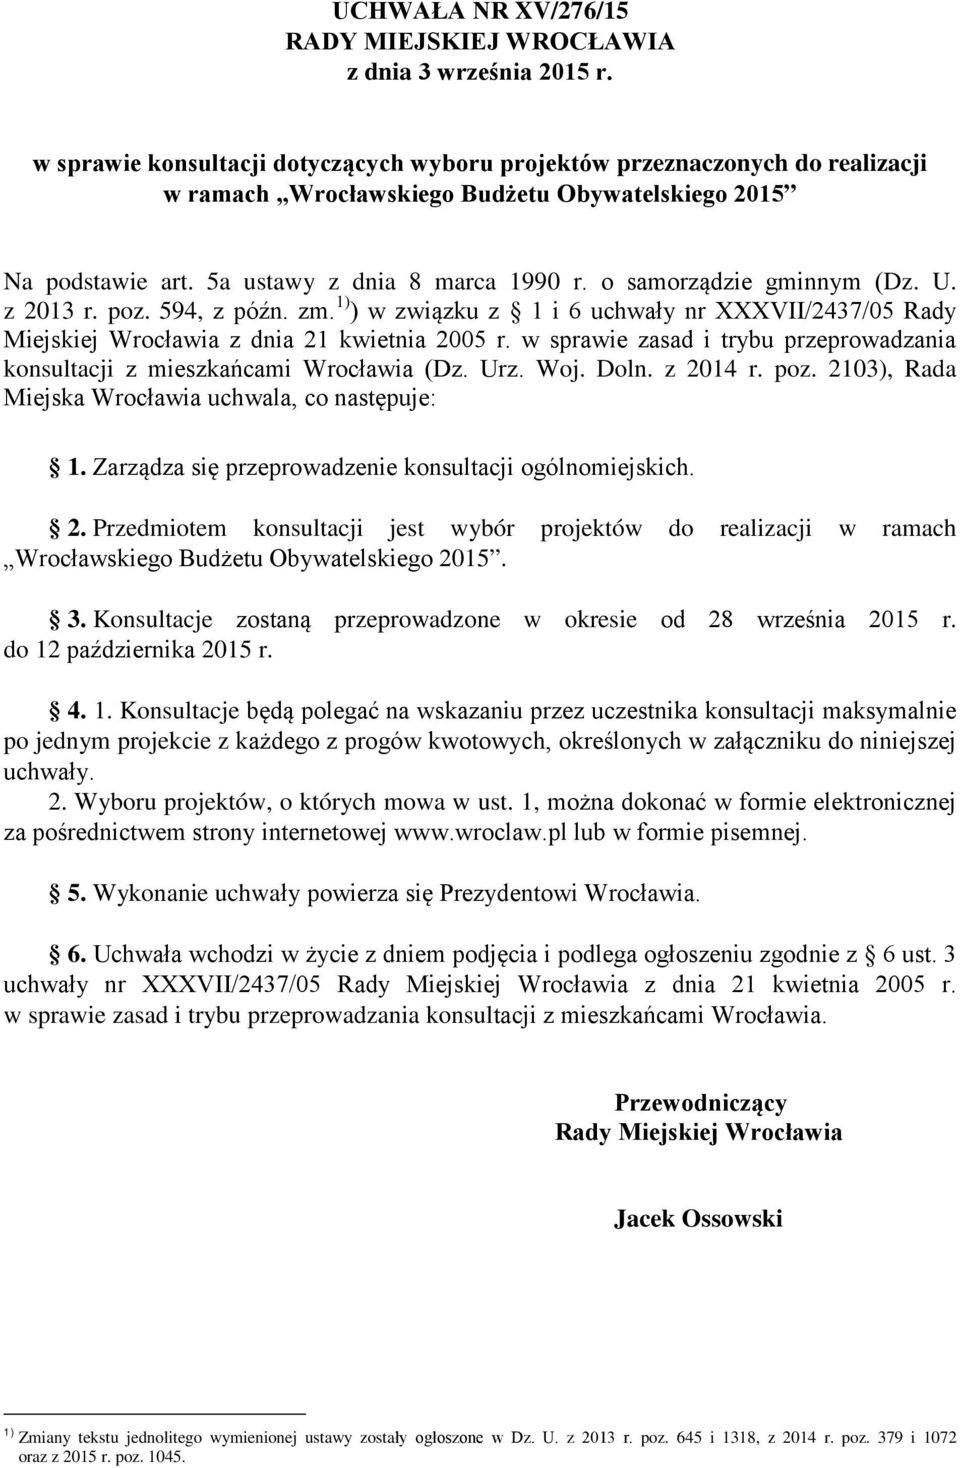 w sprawie zasad i trybu przeprowadzania konsultacji z mieszkańcami Wrocławia (Dz. Urz. Woj. Doln. z 2014 r. poz. 2103), Rada Miejska Wrocławia uchwala, co następuje: 1.